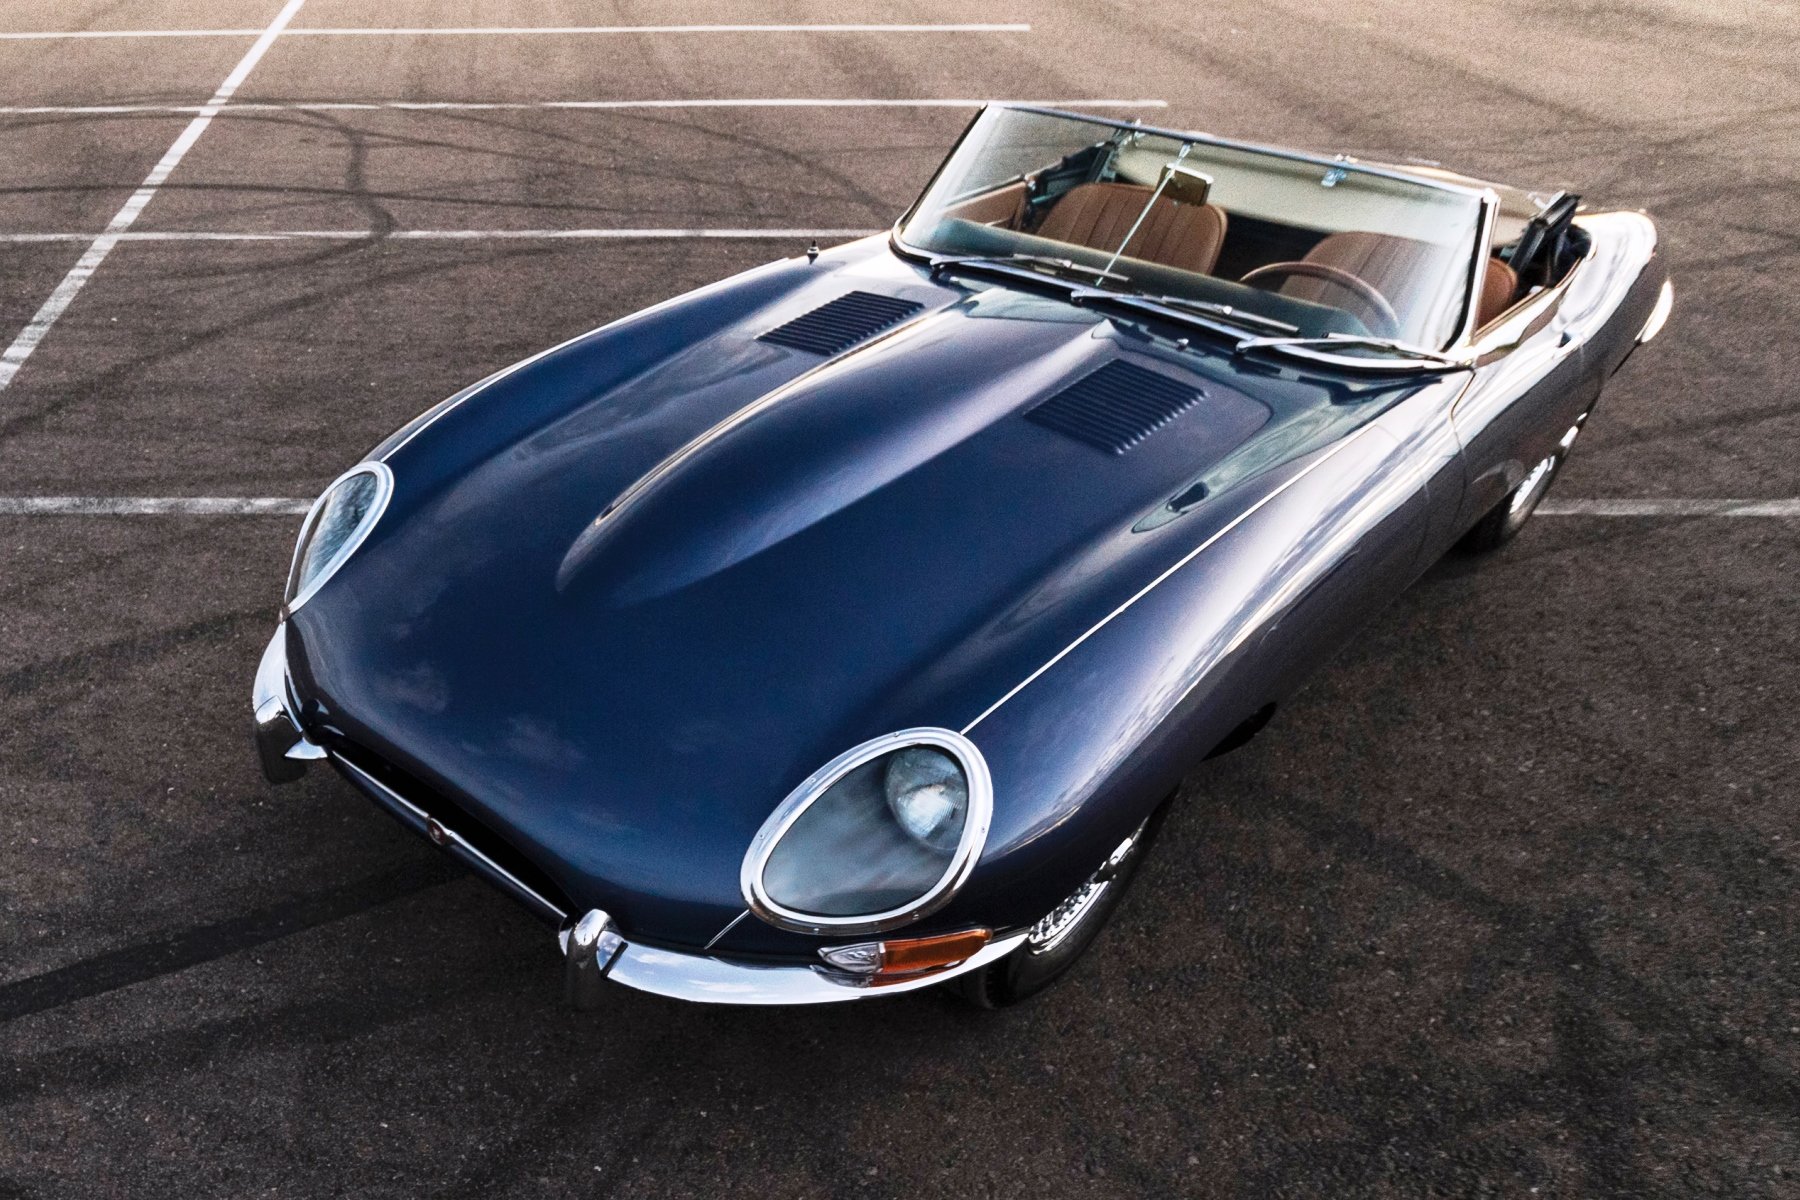 1965-Jaguar-E-Type-Series-1-4.2-Litre-Ro